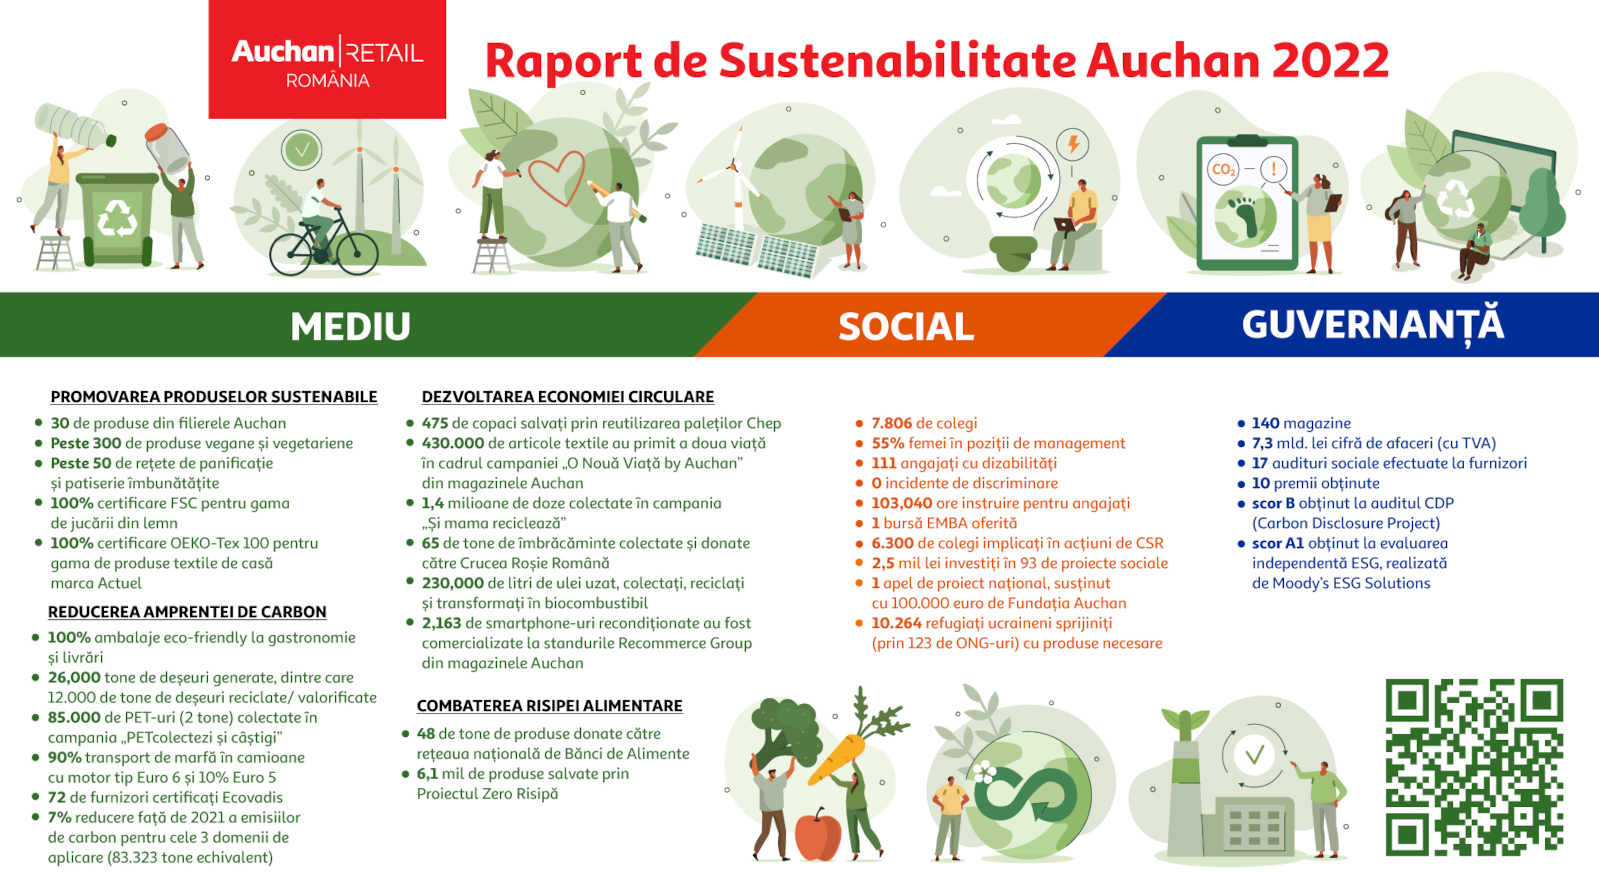 Auchan România a lansat Raportul de Sustenabilitate 2022 prin care prezintă impactul și rezultatele strategiei de sustenabilitate